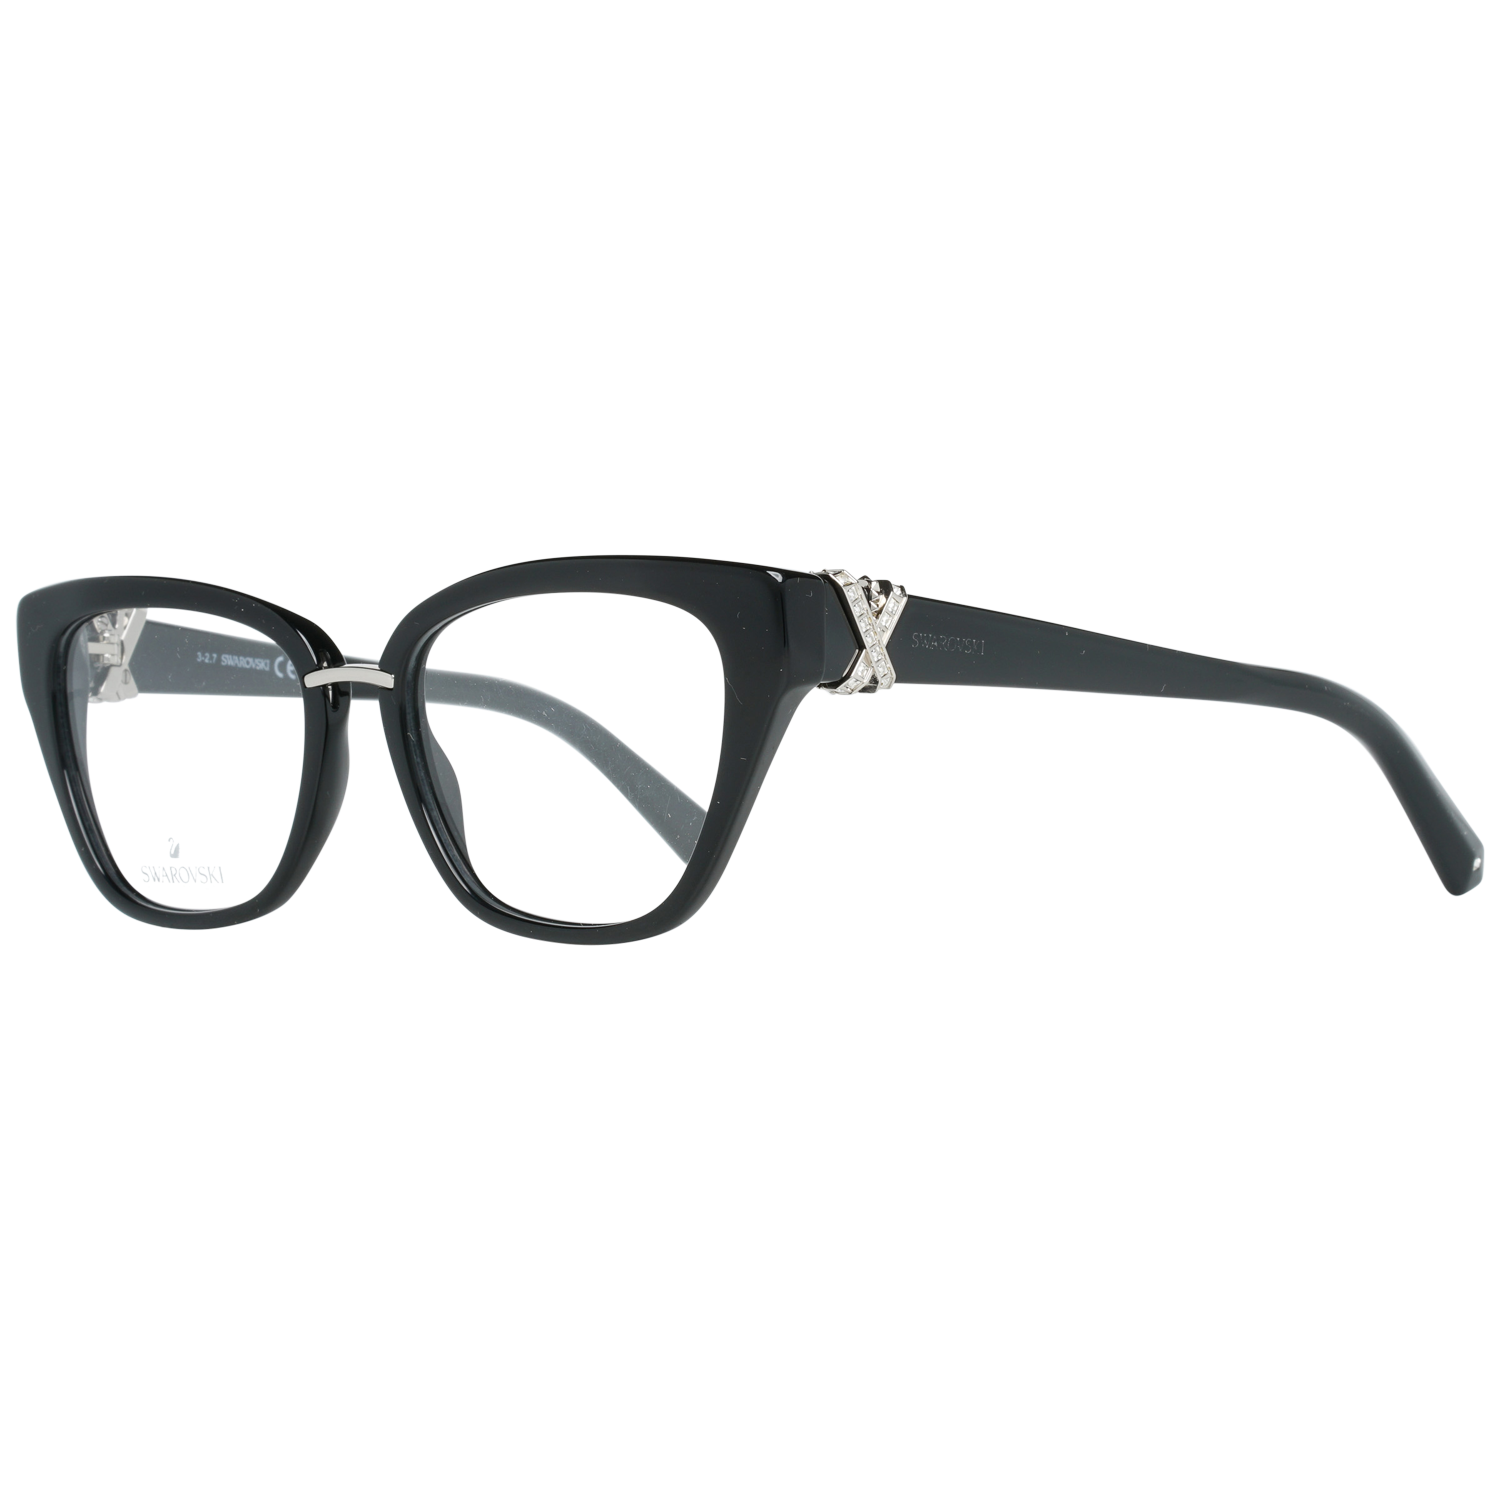 Swarovski Frames Swarovski Women Glasses Optical Frame SK5251 001 52 Eyeglasses Eyewear UK USA Australia 